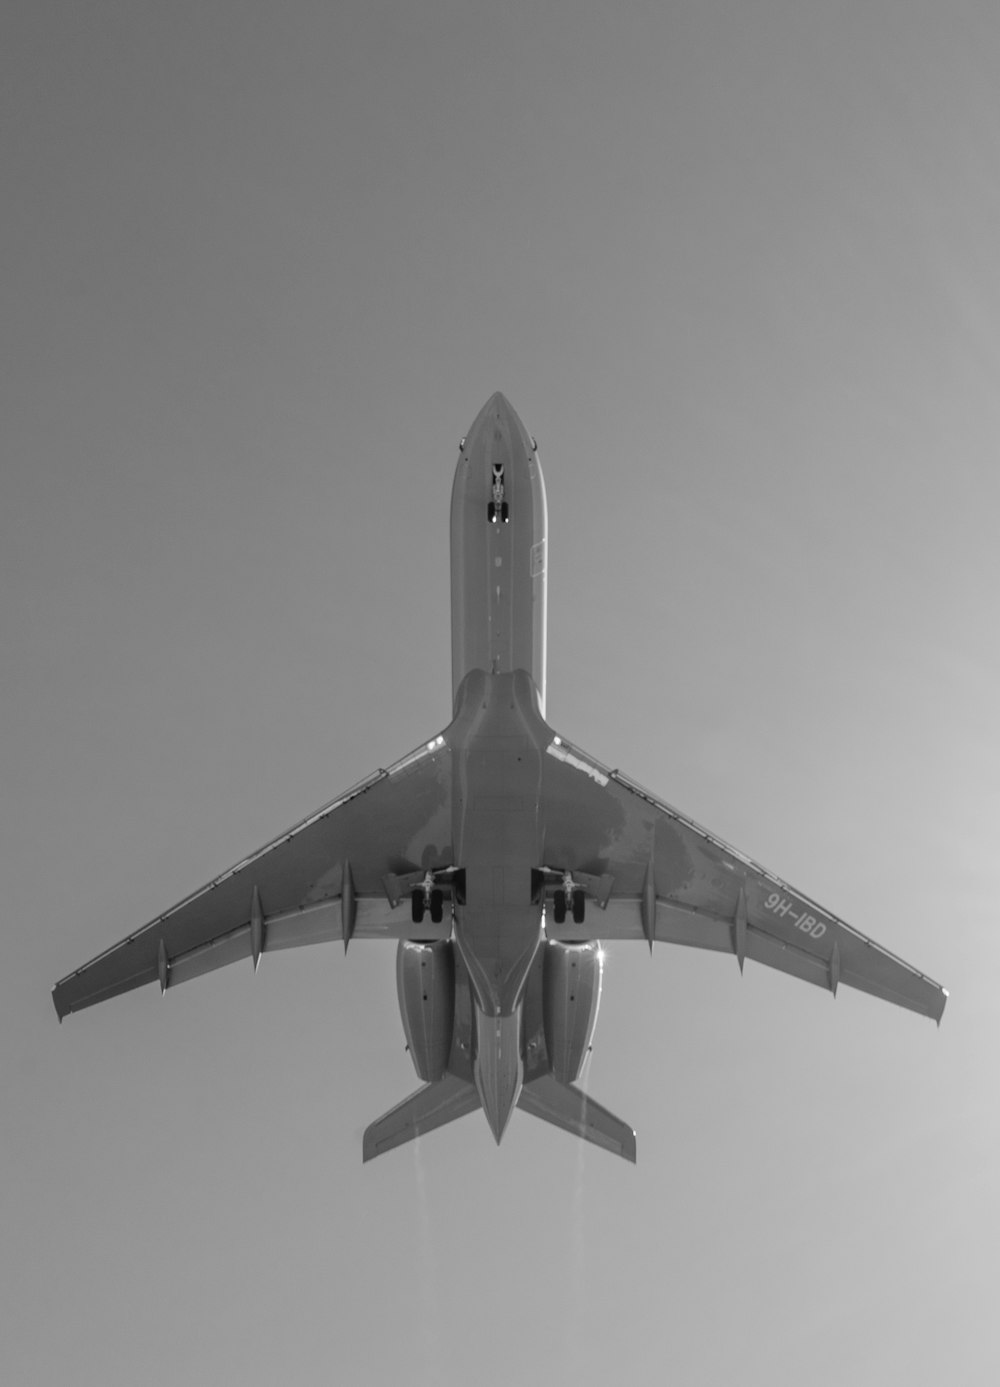 空中の飛行機のグレースケール写真